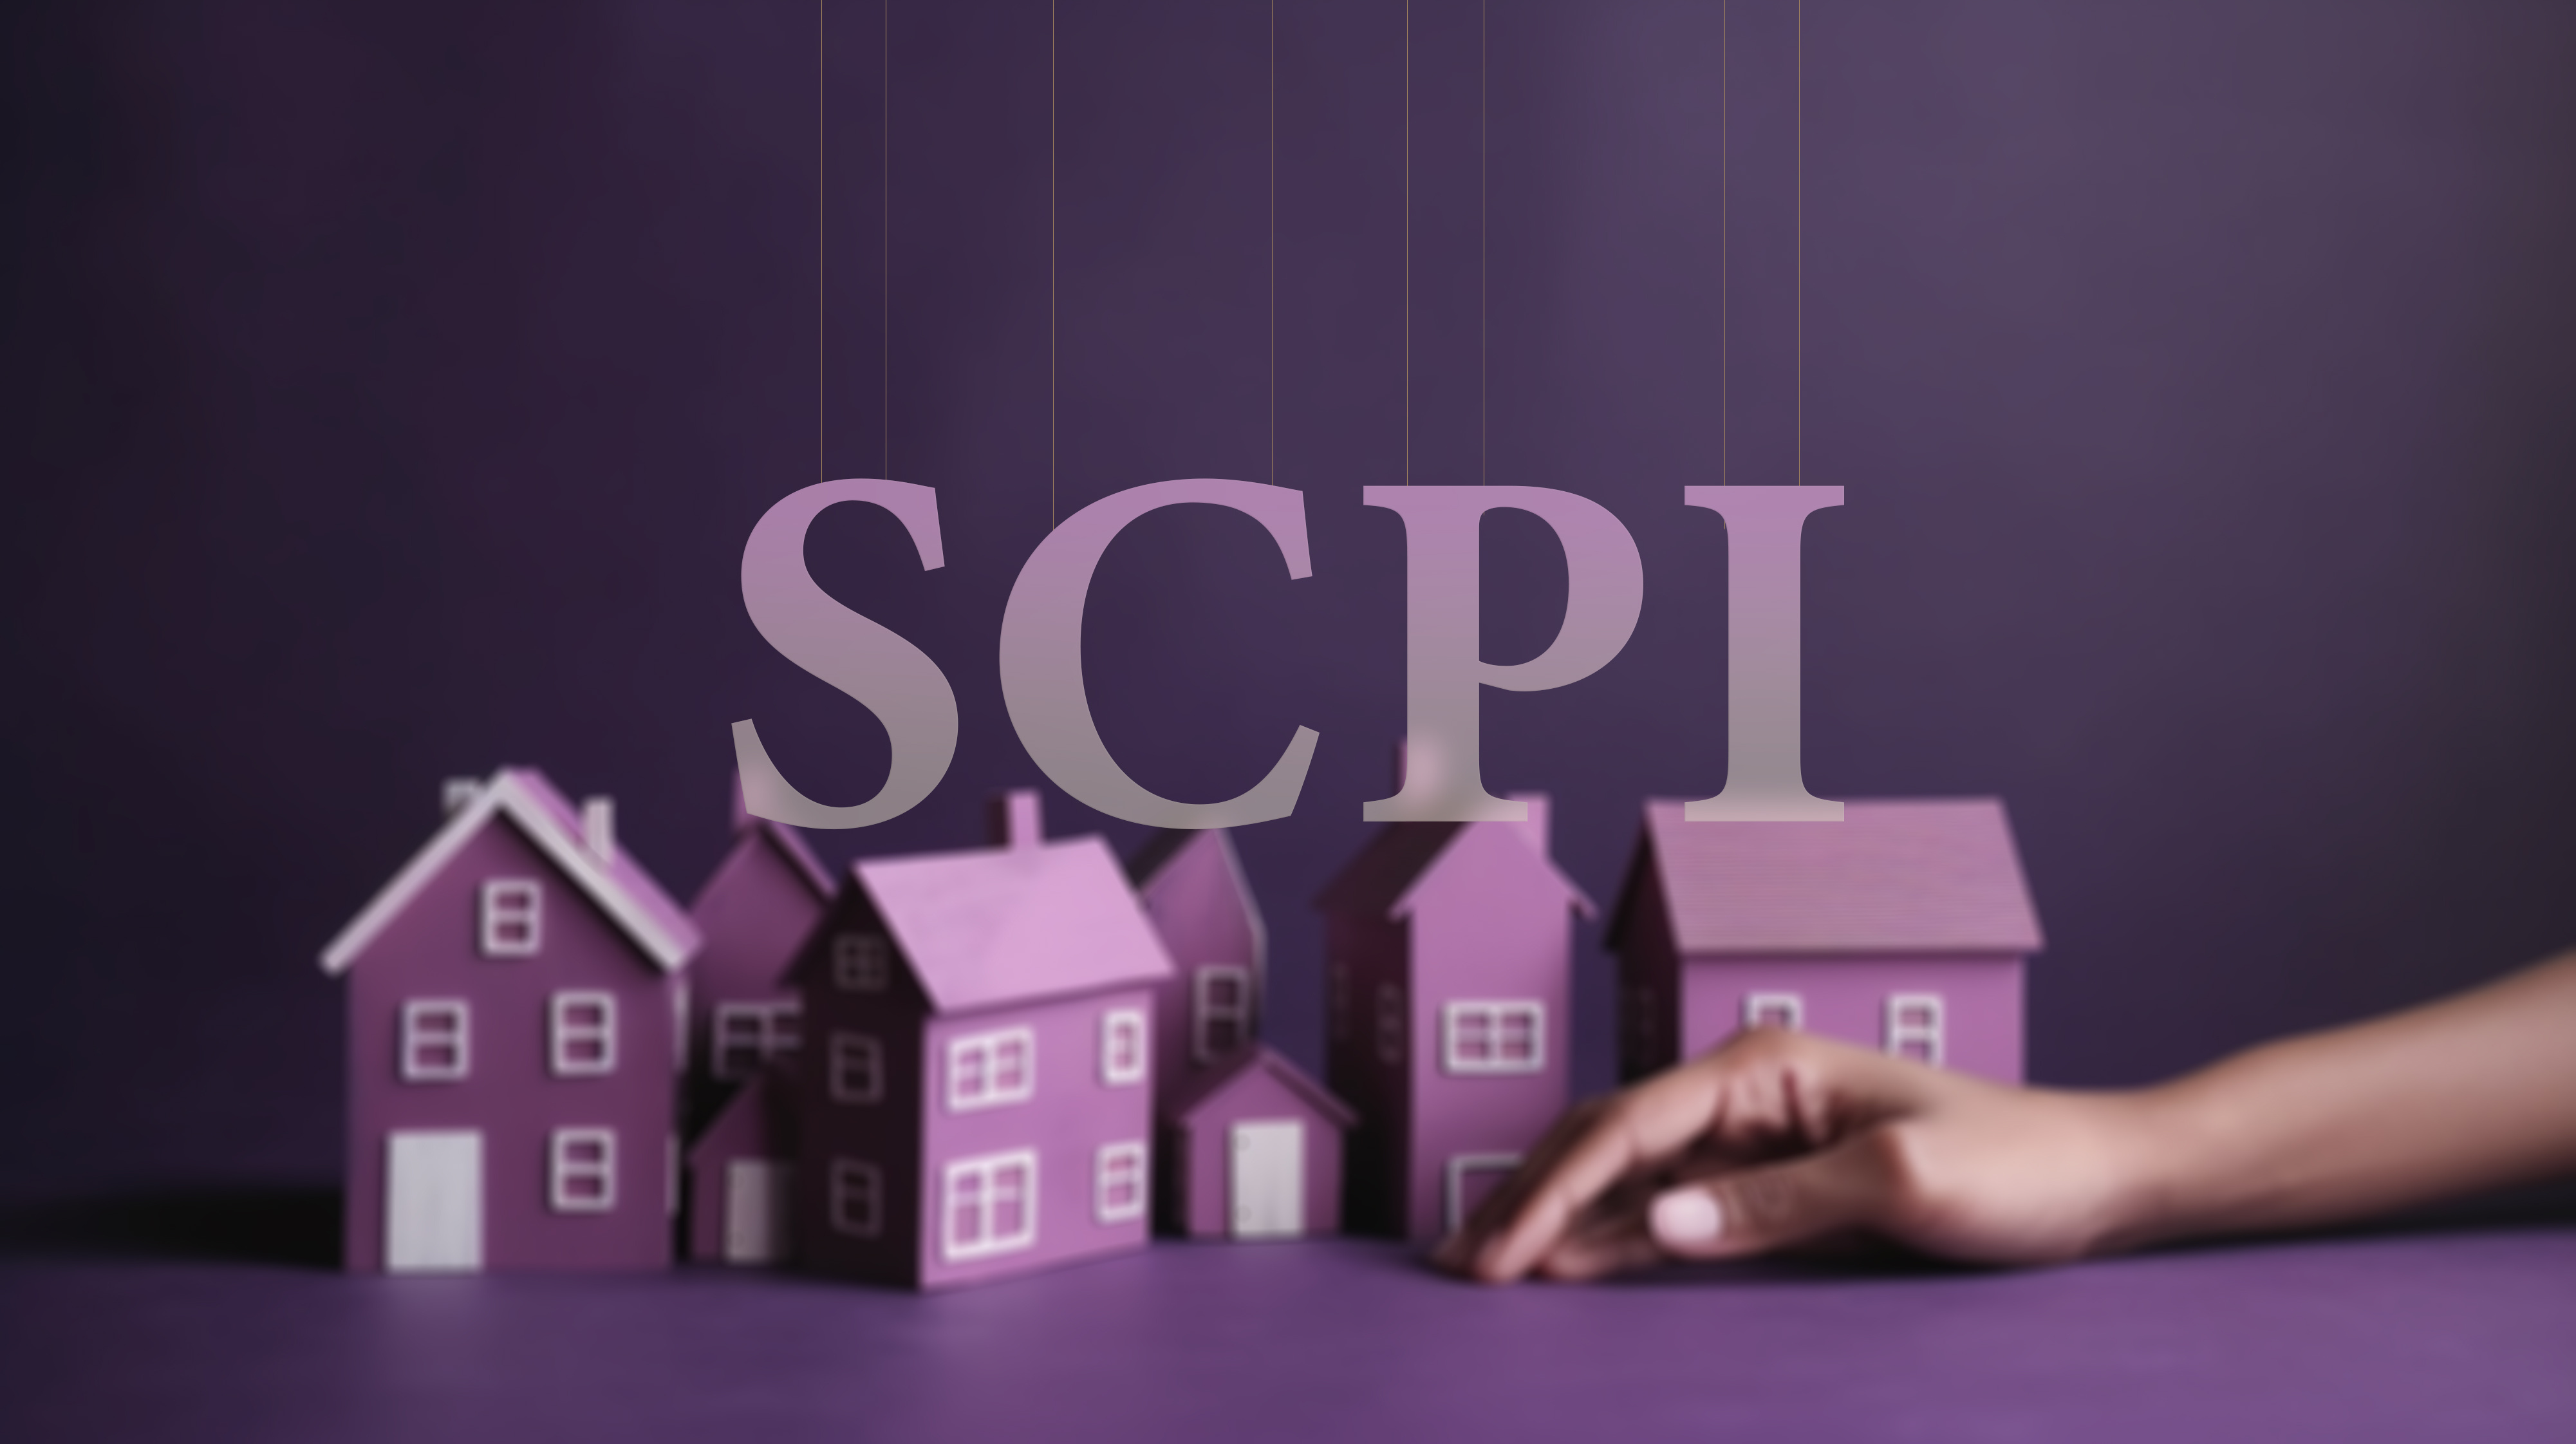 Découvrez les avantages et les risques des SCPI. Un article complet pour comprendre cet investissement immobilier et prendre des décisions éclairées. © Maurice Norbert, Adobe Stock 